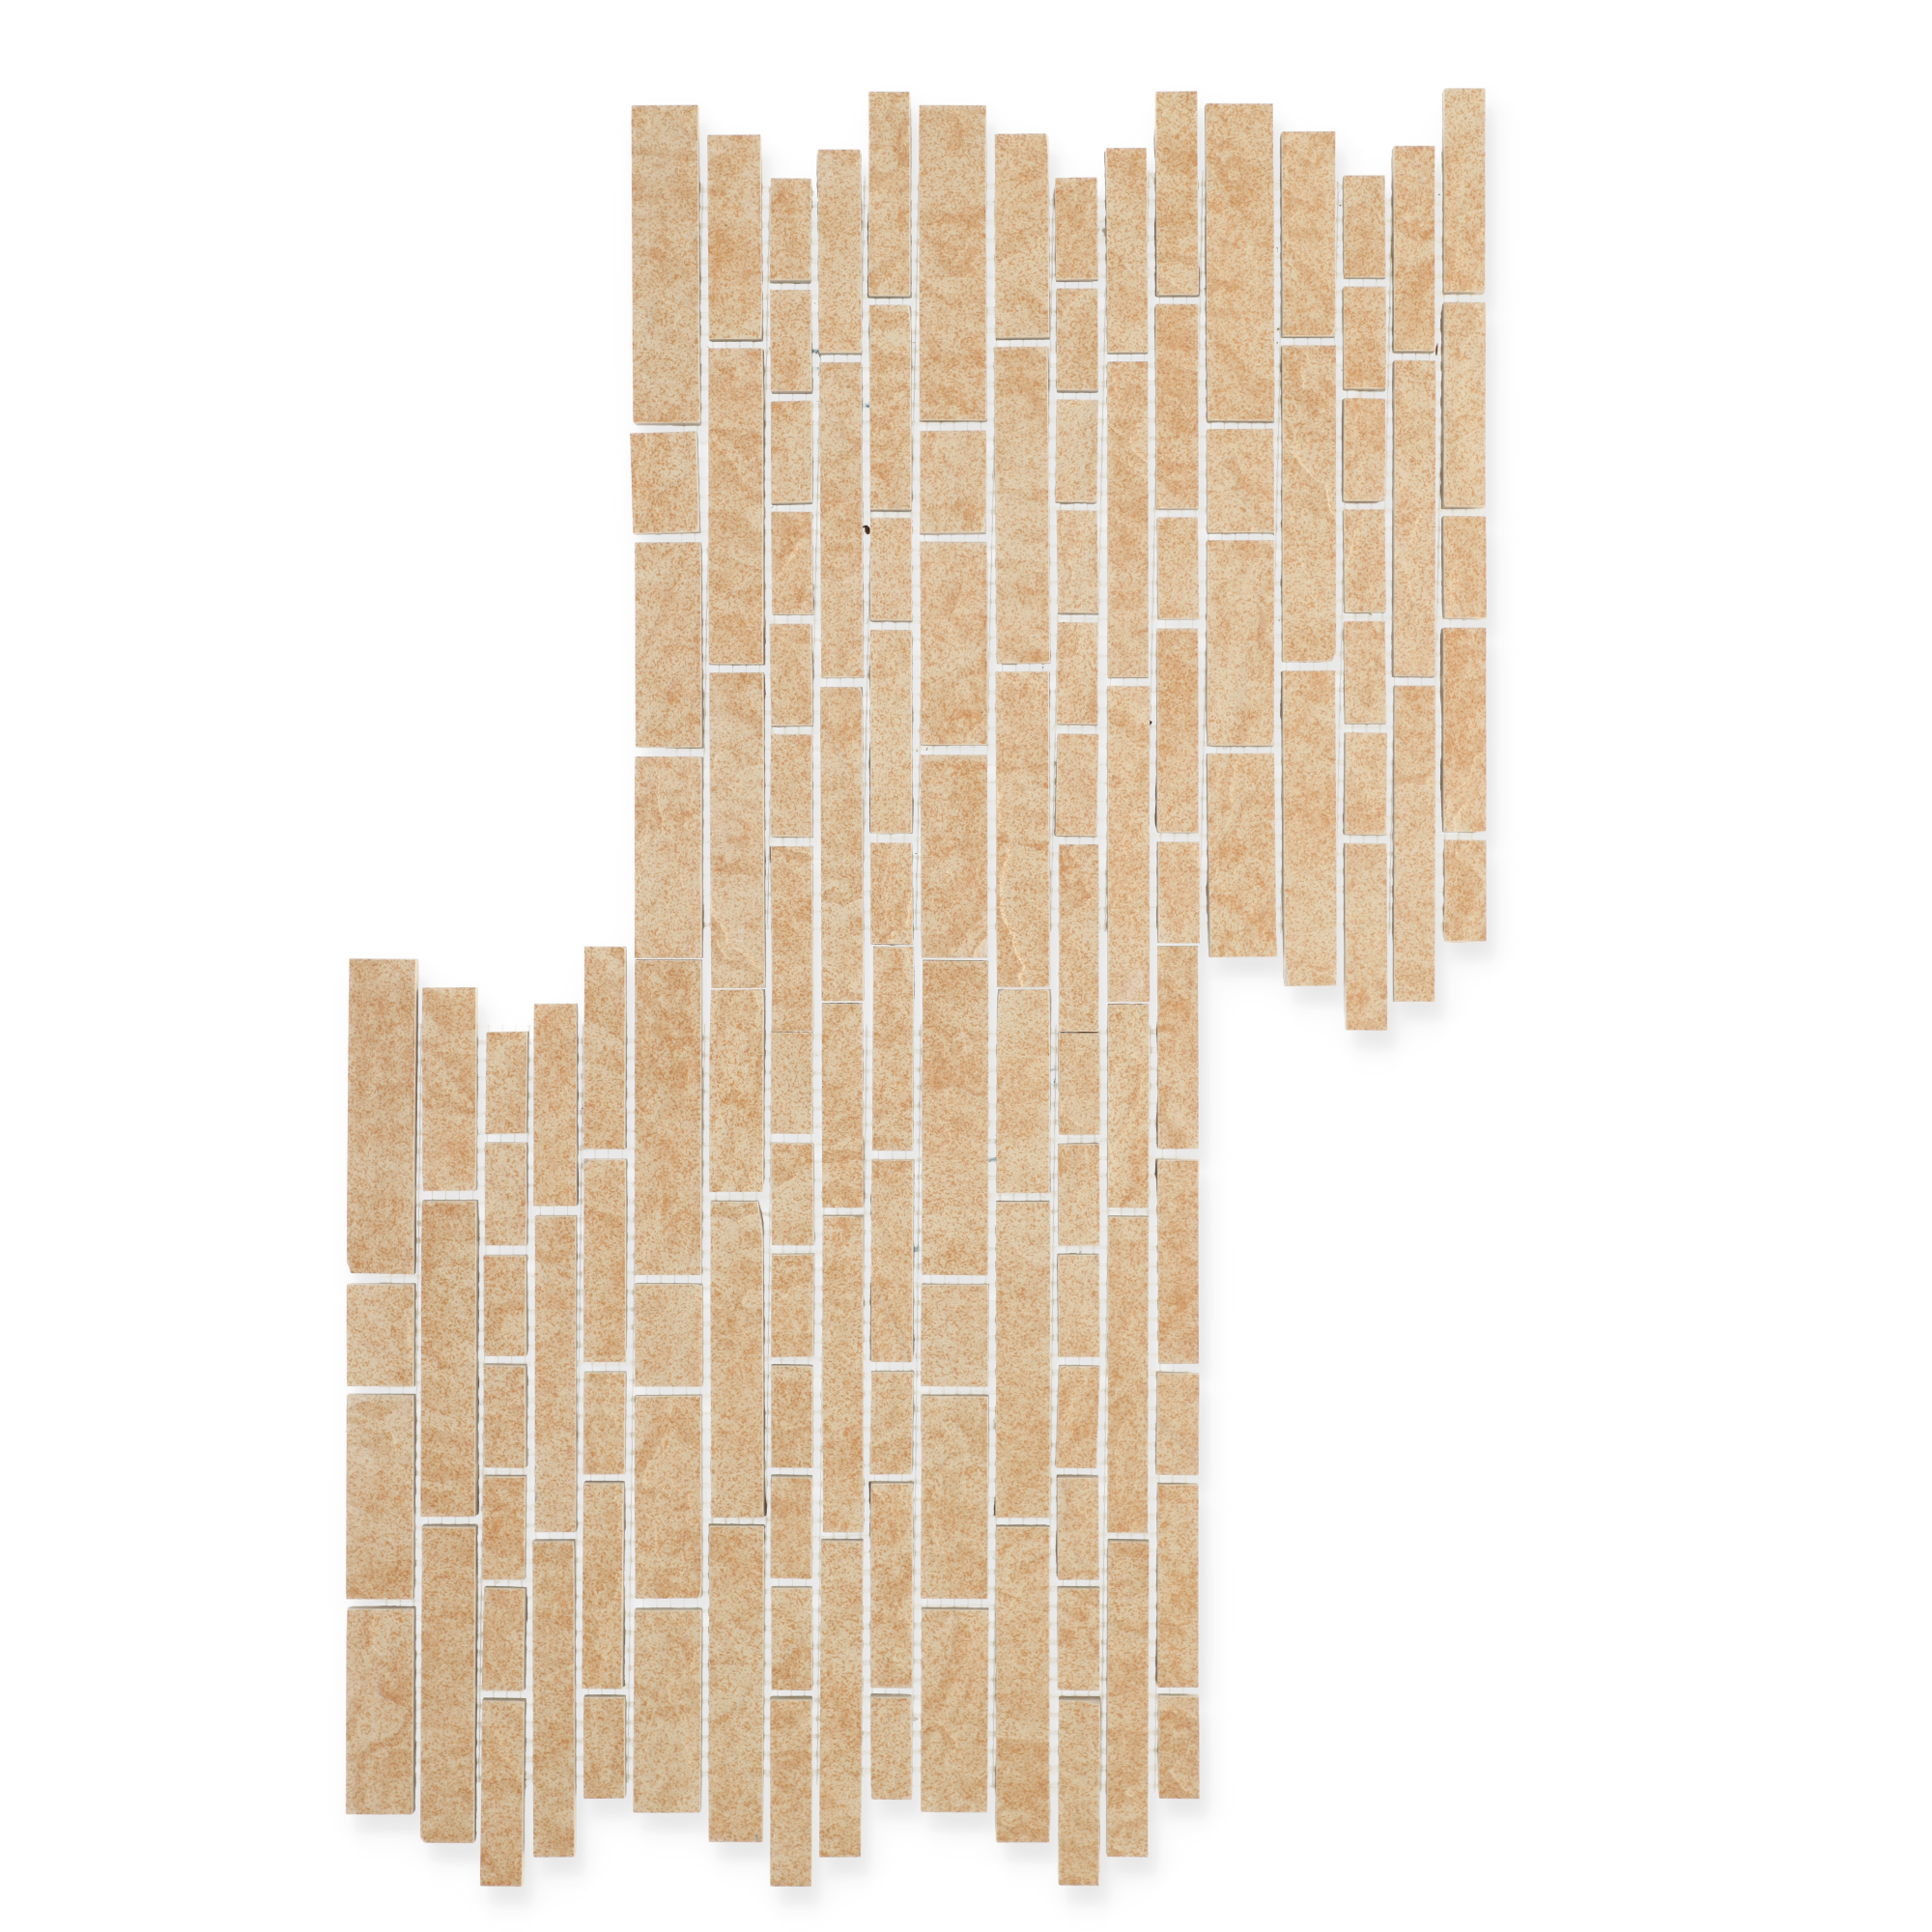 Mosaikfliese 'Vermont' Feinsteinzeug sand 29,5 x 29,5 cm + product picture